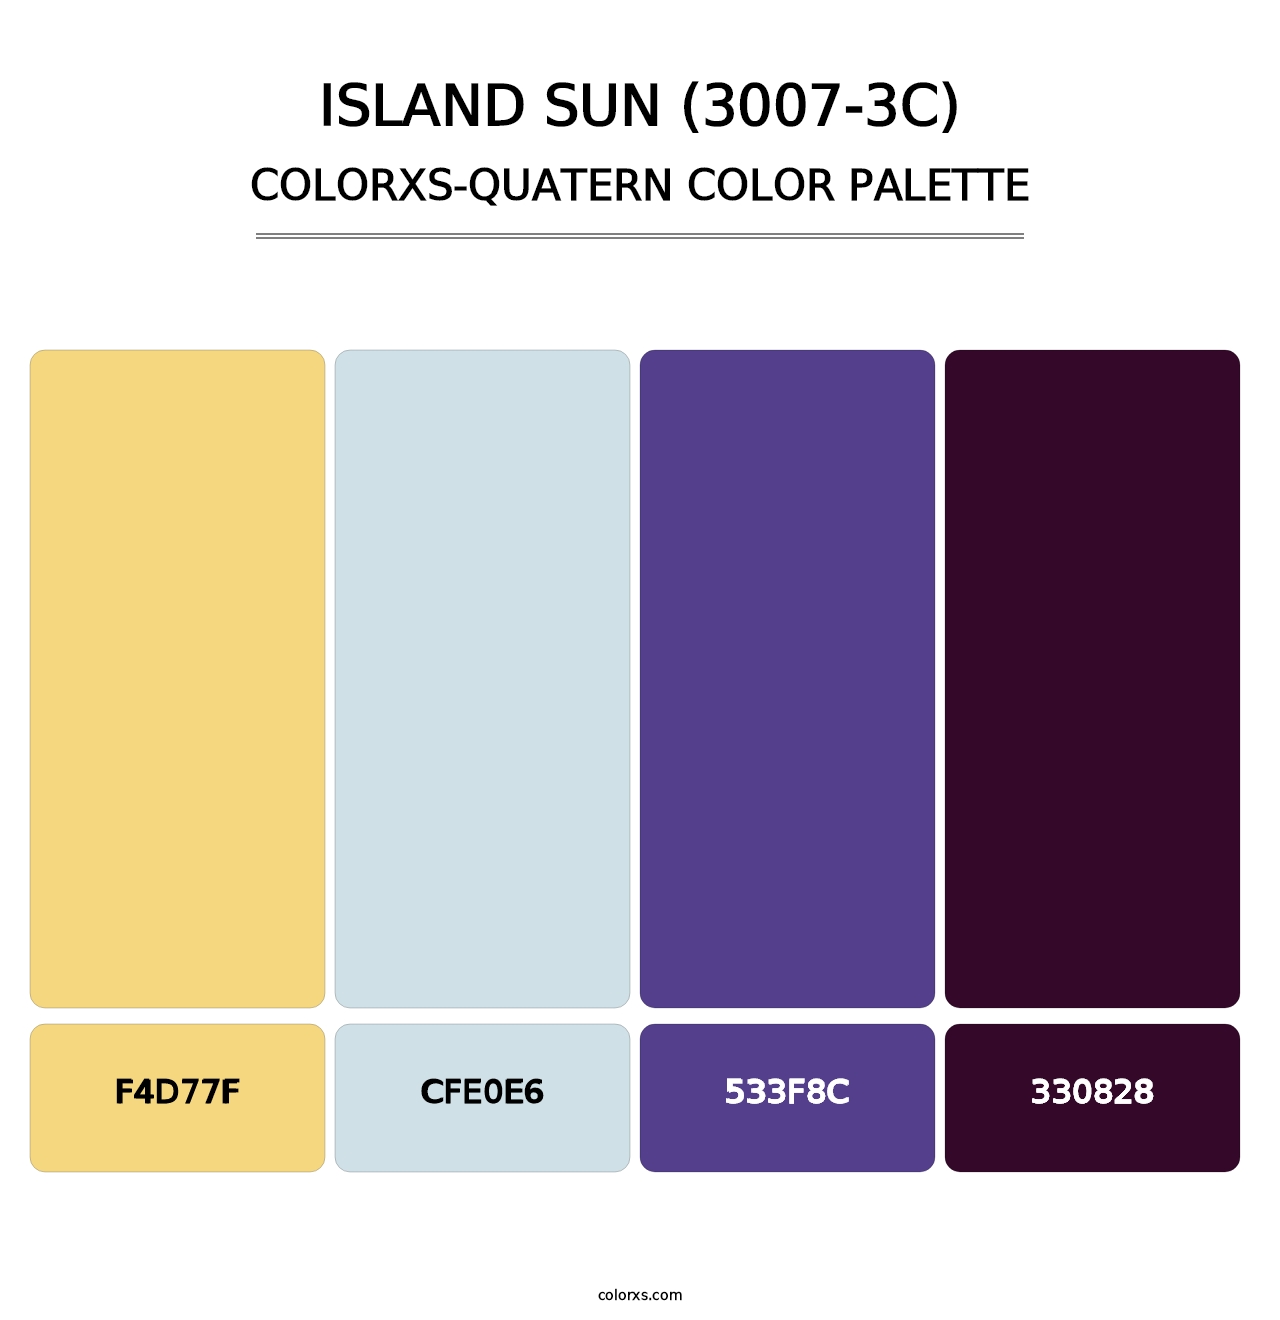 Island Sun (3007-3C) - Colorxs Quatern Palette